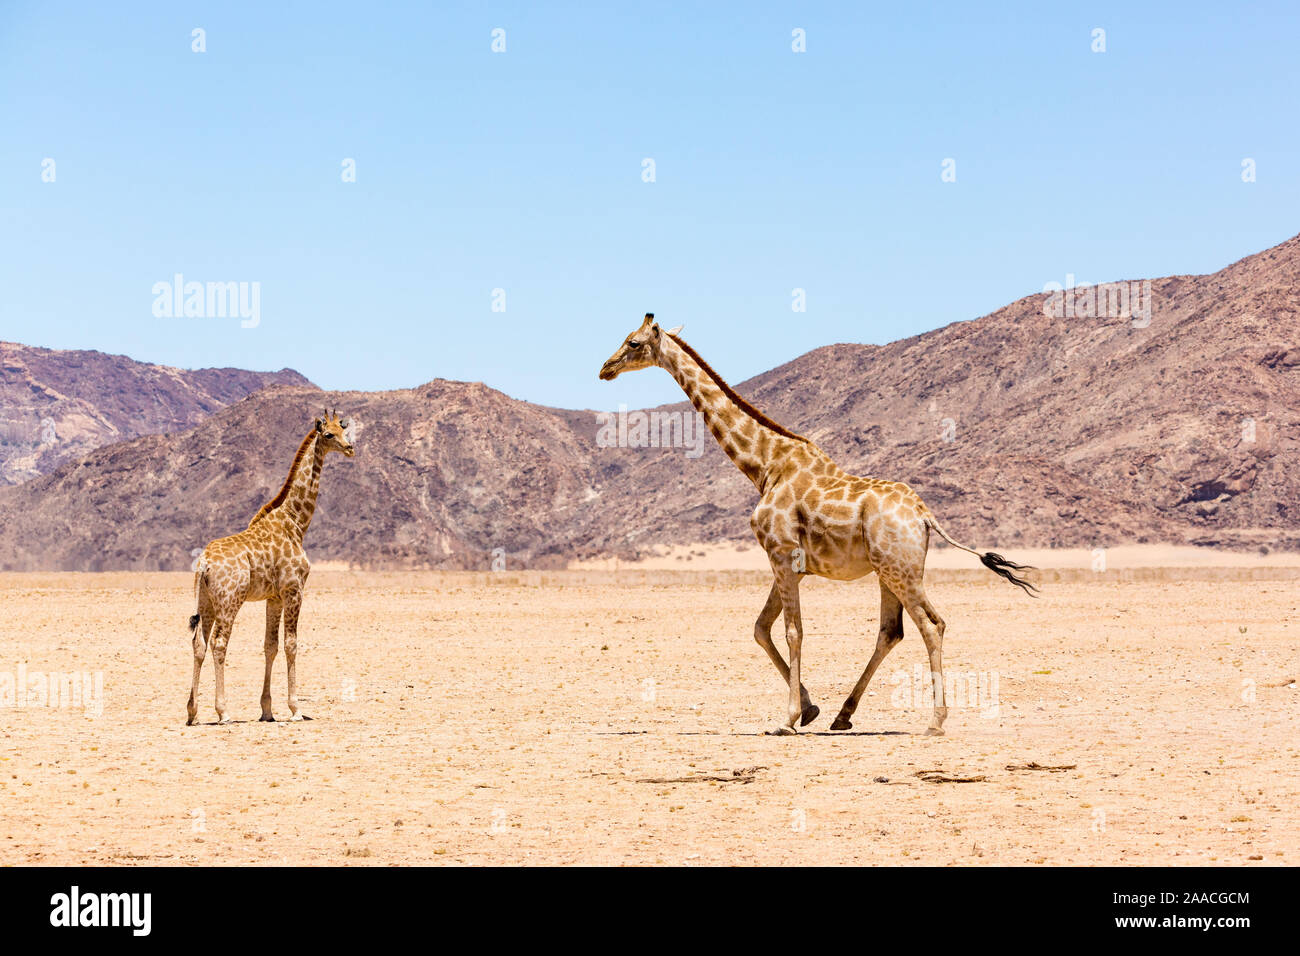 Girafe marchant à sa progéniture, désert du Namib avec montagnes rocheuses, la Namibie, l'Afrique Banque D'Images